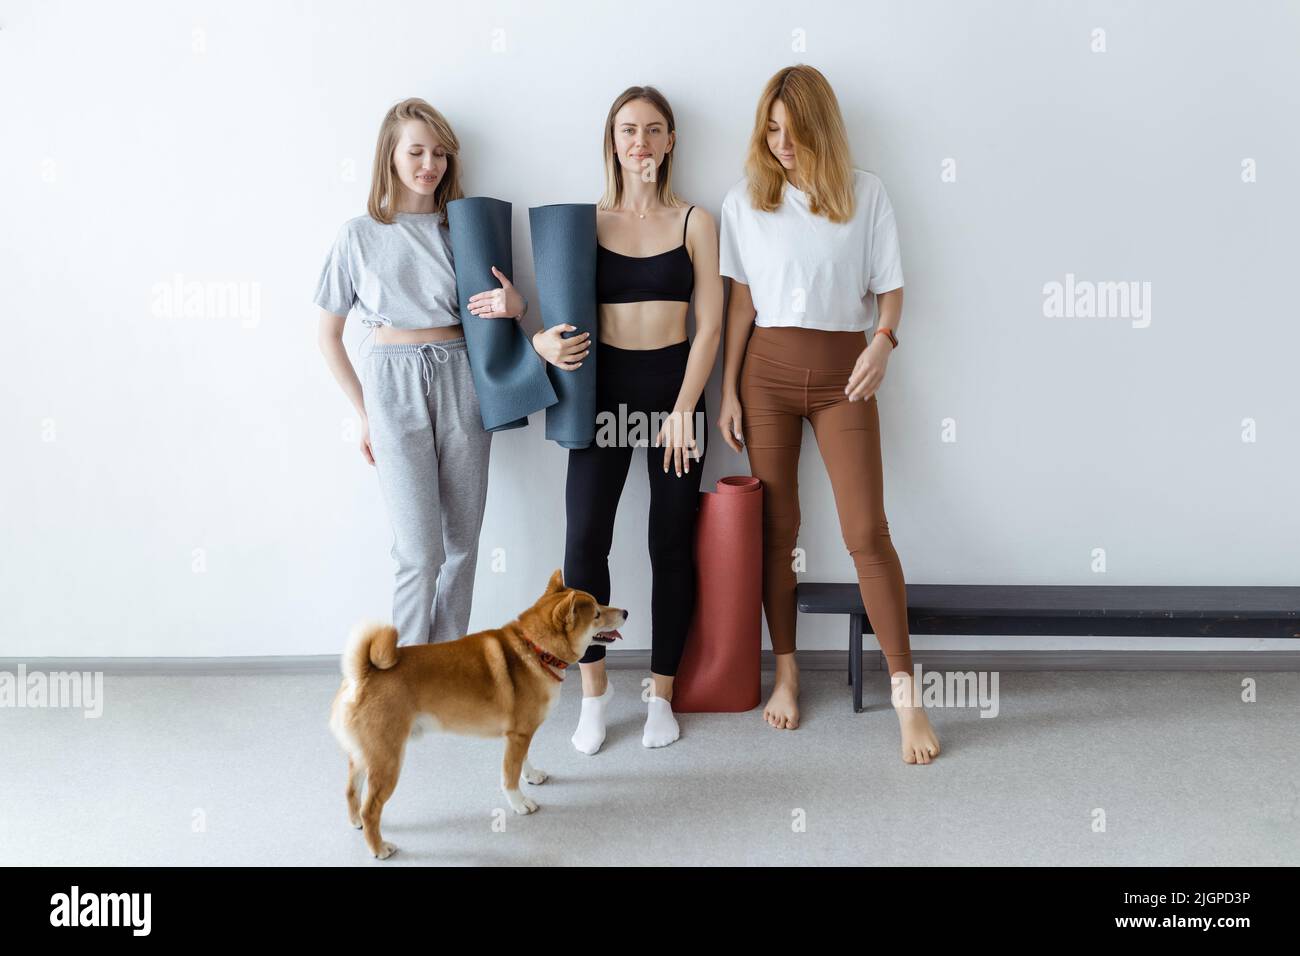 Schöne junge Mädchen in den Händen mit einer Yogamatte oder Karemat stehen vor dem Training lächelnd gegen die Wand und mit ihnen ein Hund im Haus Stockfoto